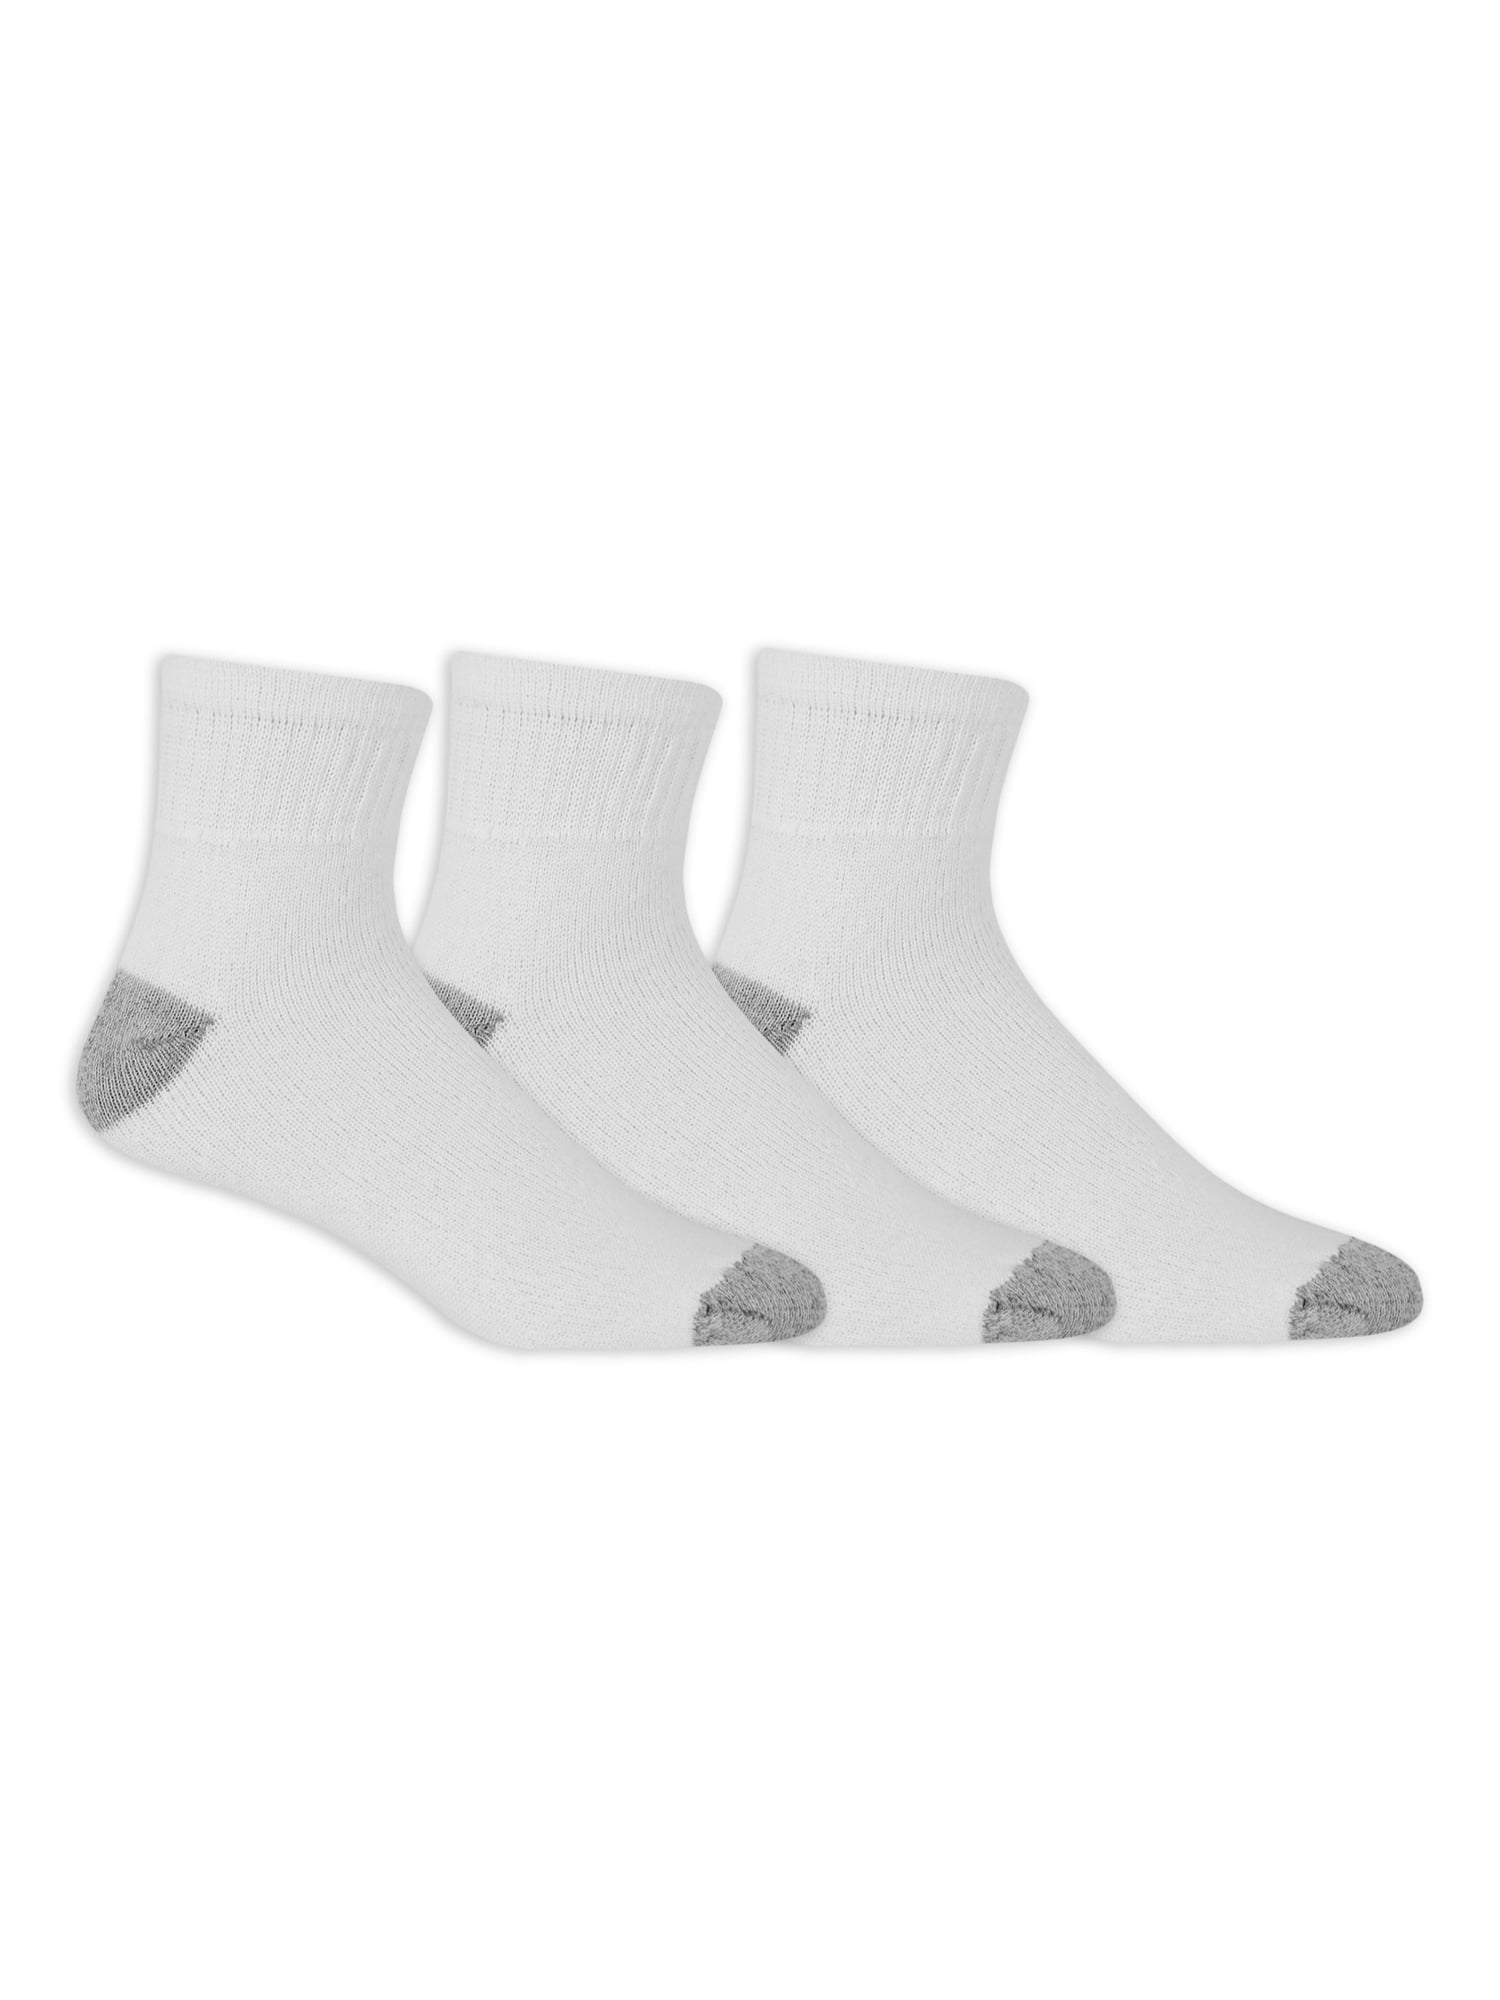 Athletic Works Men's Ankle Socks, 3 Pair Pack